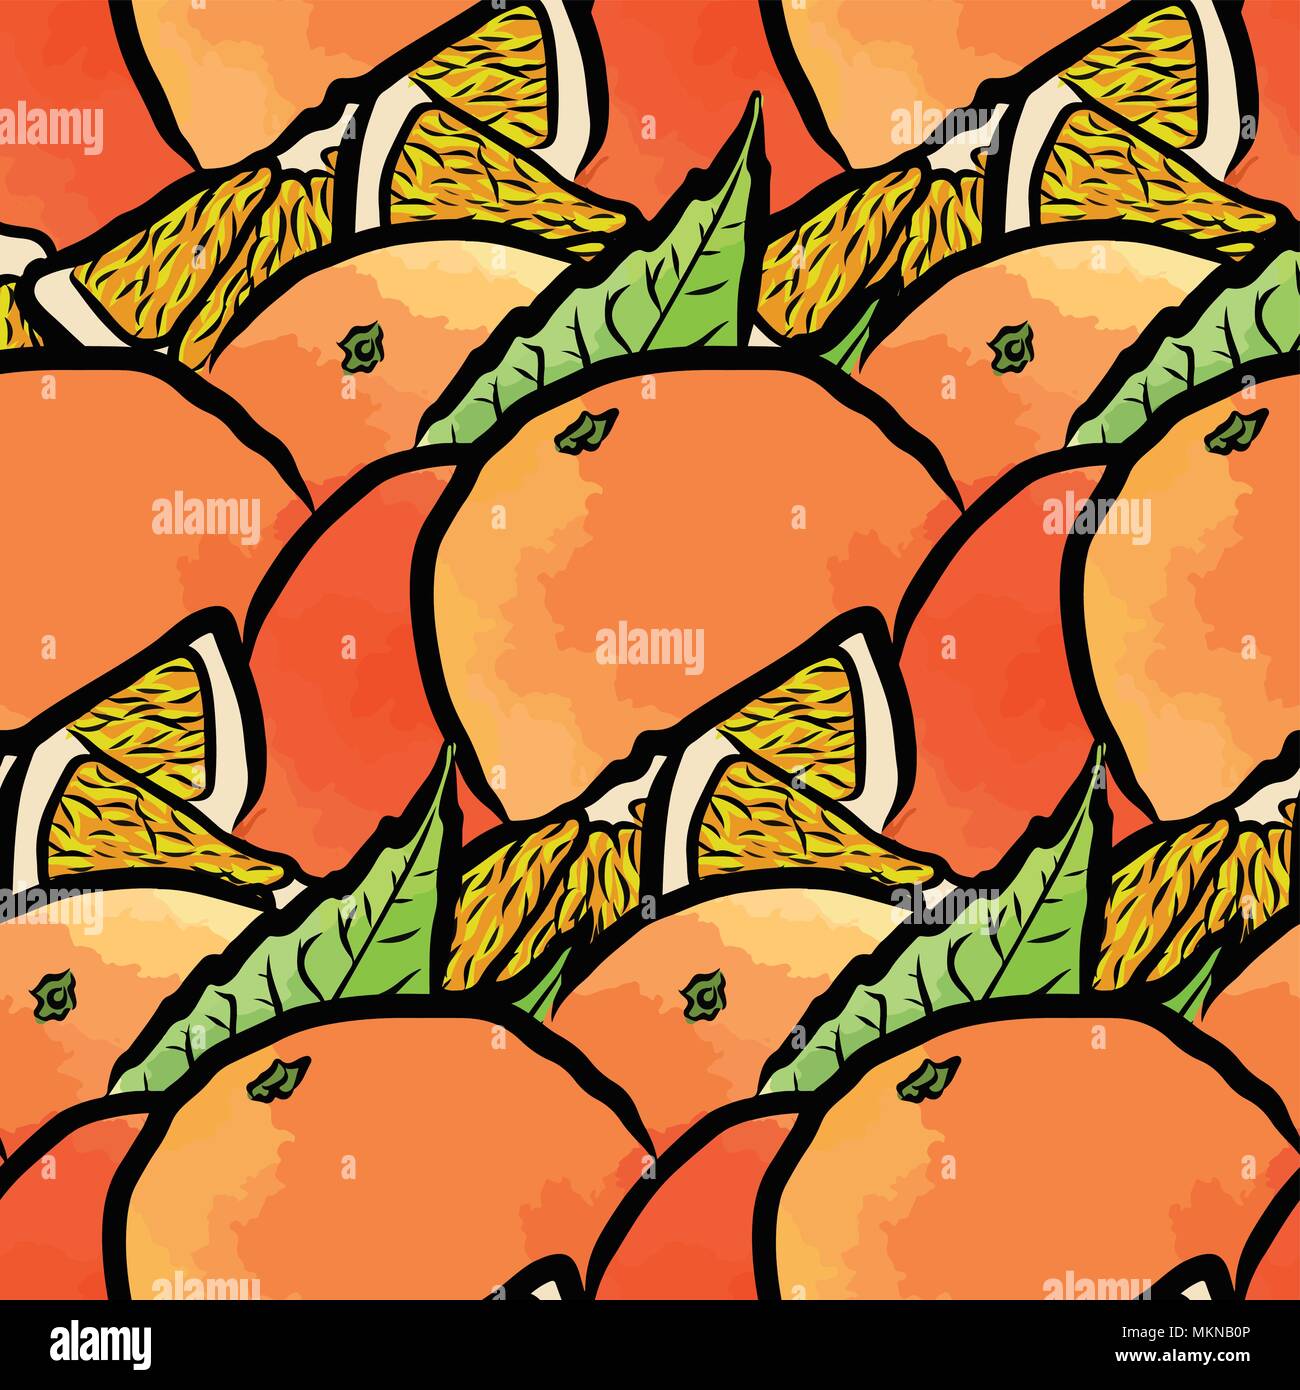 Vektor nahtlose Muster von frischen Orangen. Von Hand gezeichnet und farbige Abbildung Stock Vektor